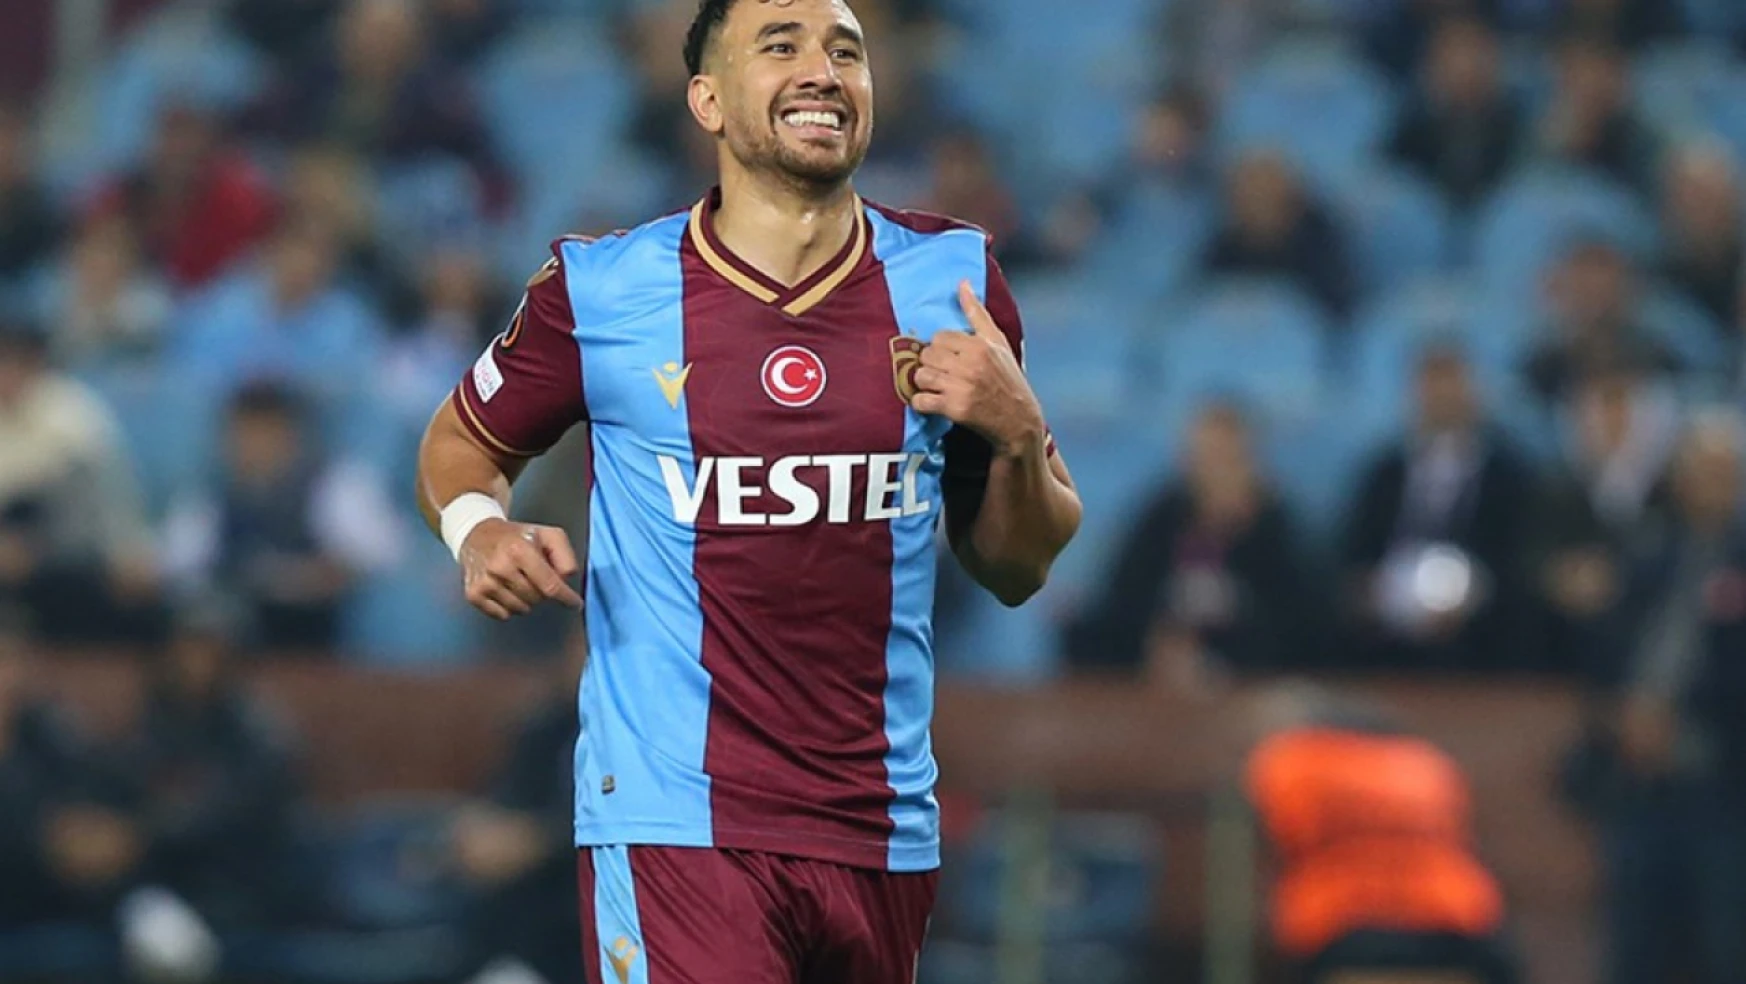 Trabzonsporlu futbolcu Trezeguet: Burada mutluyum